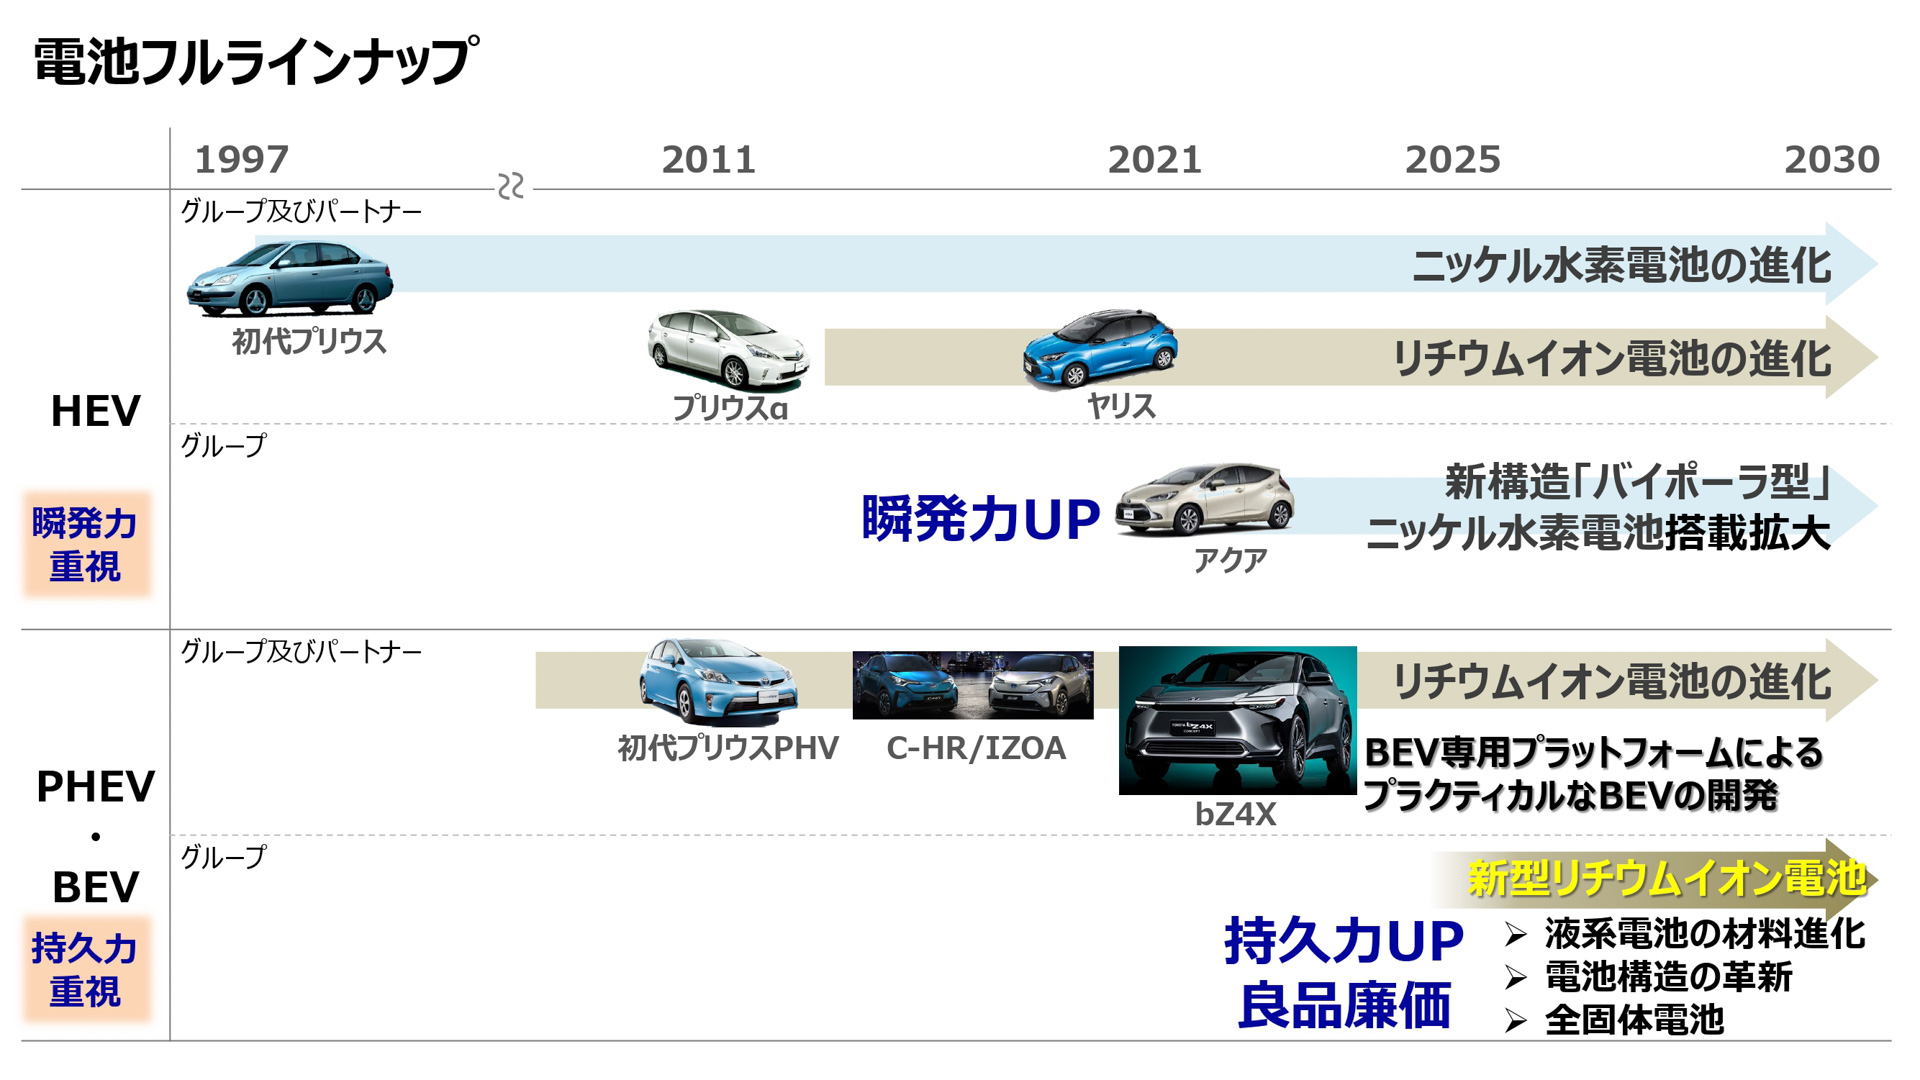 丰田汽车豪掷135亿美元用于研发 志在十年内引领关键电池技术